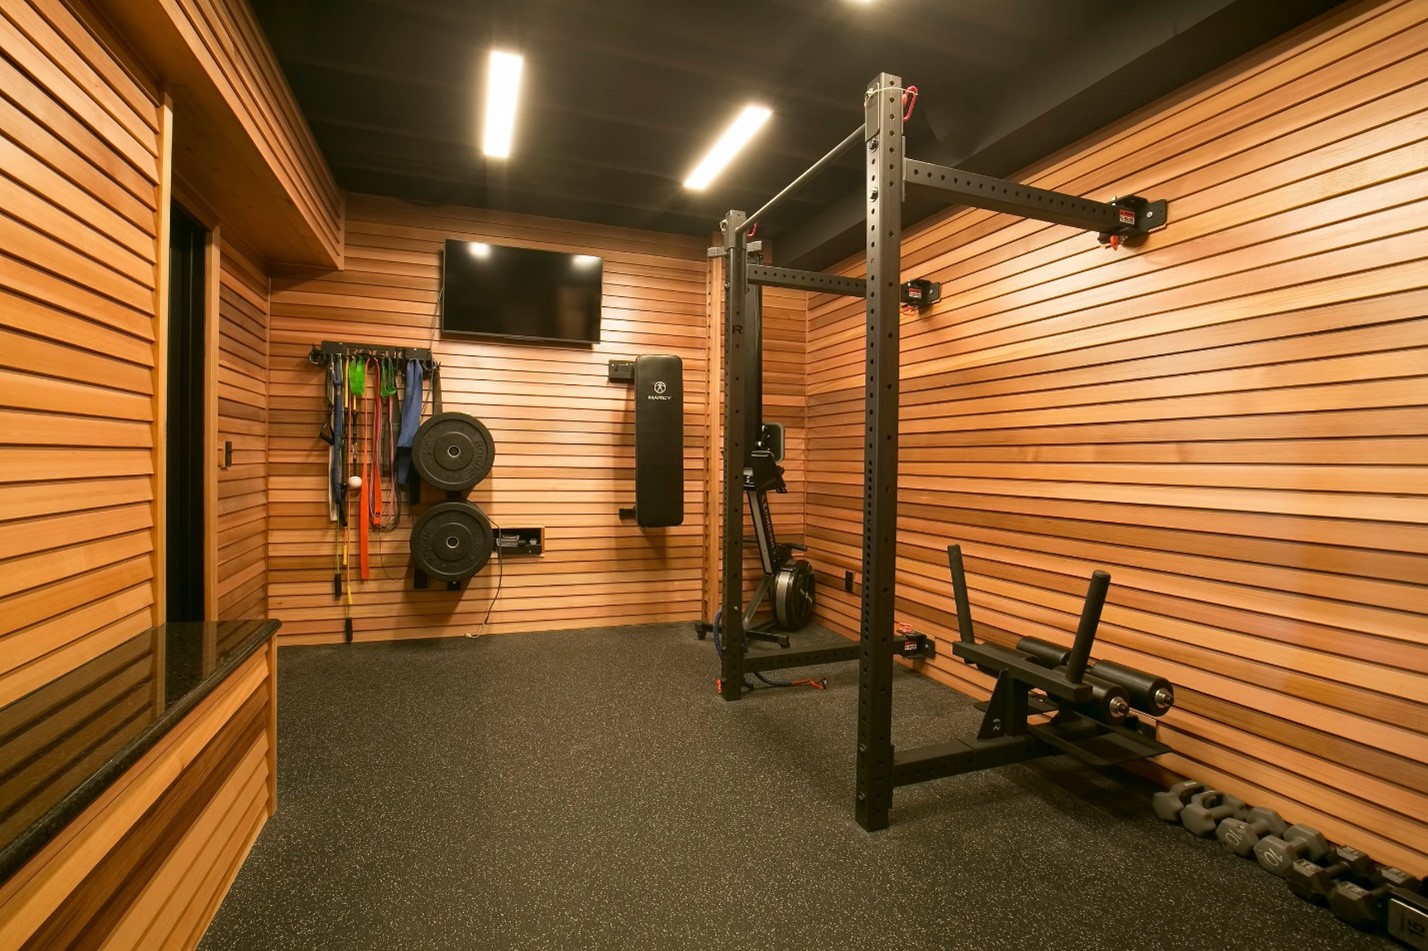 یک محیط جذاب و پاک برای تمرینات ورزشی در داخل خانه